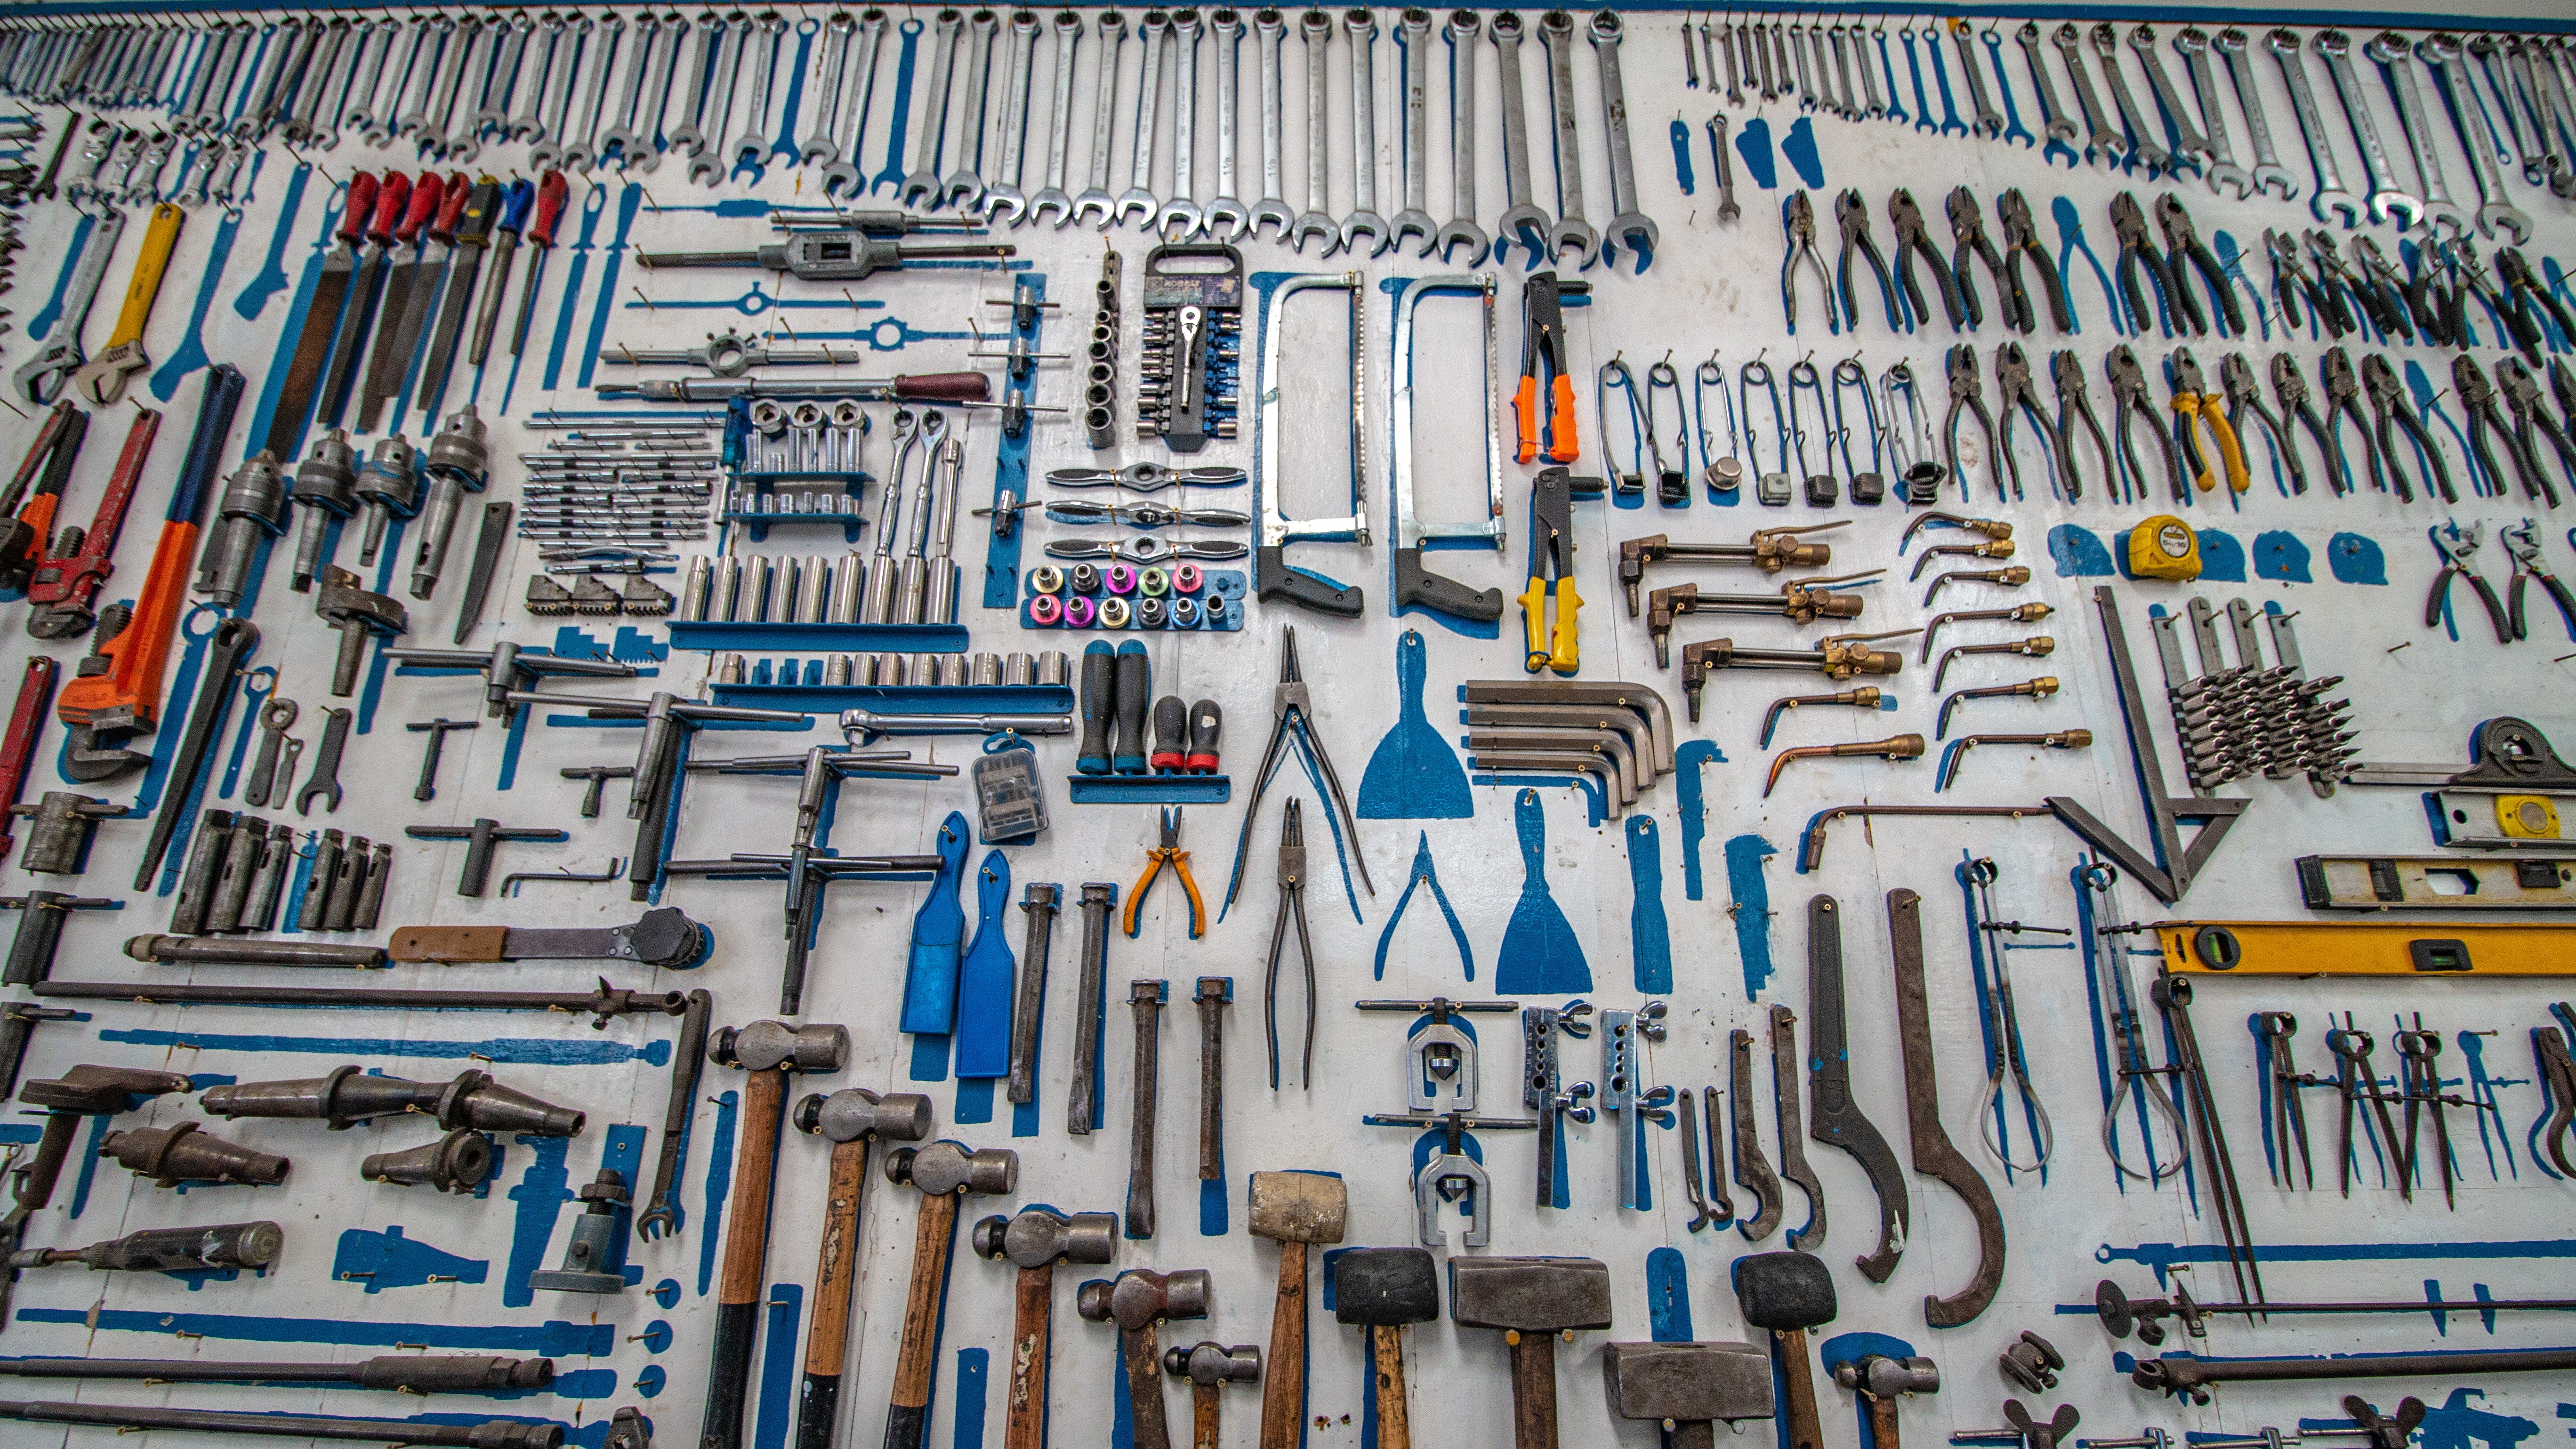 Les outils à main de votre atelier